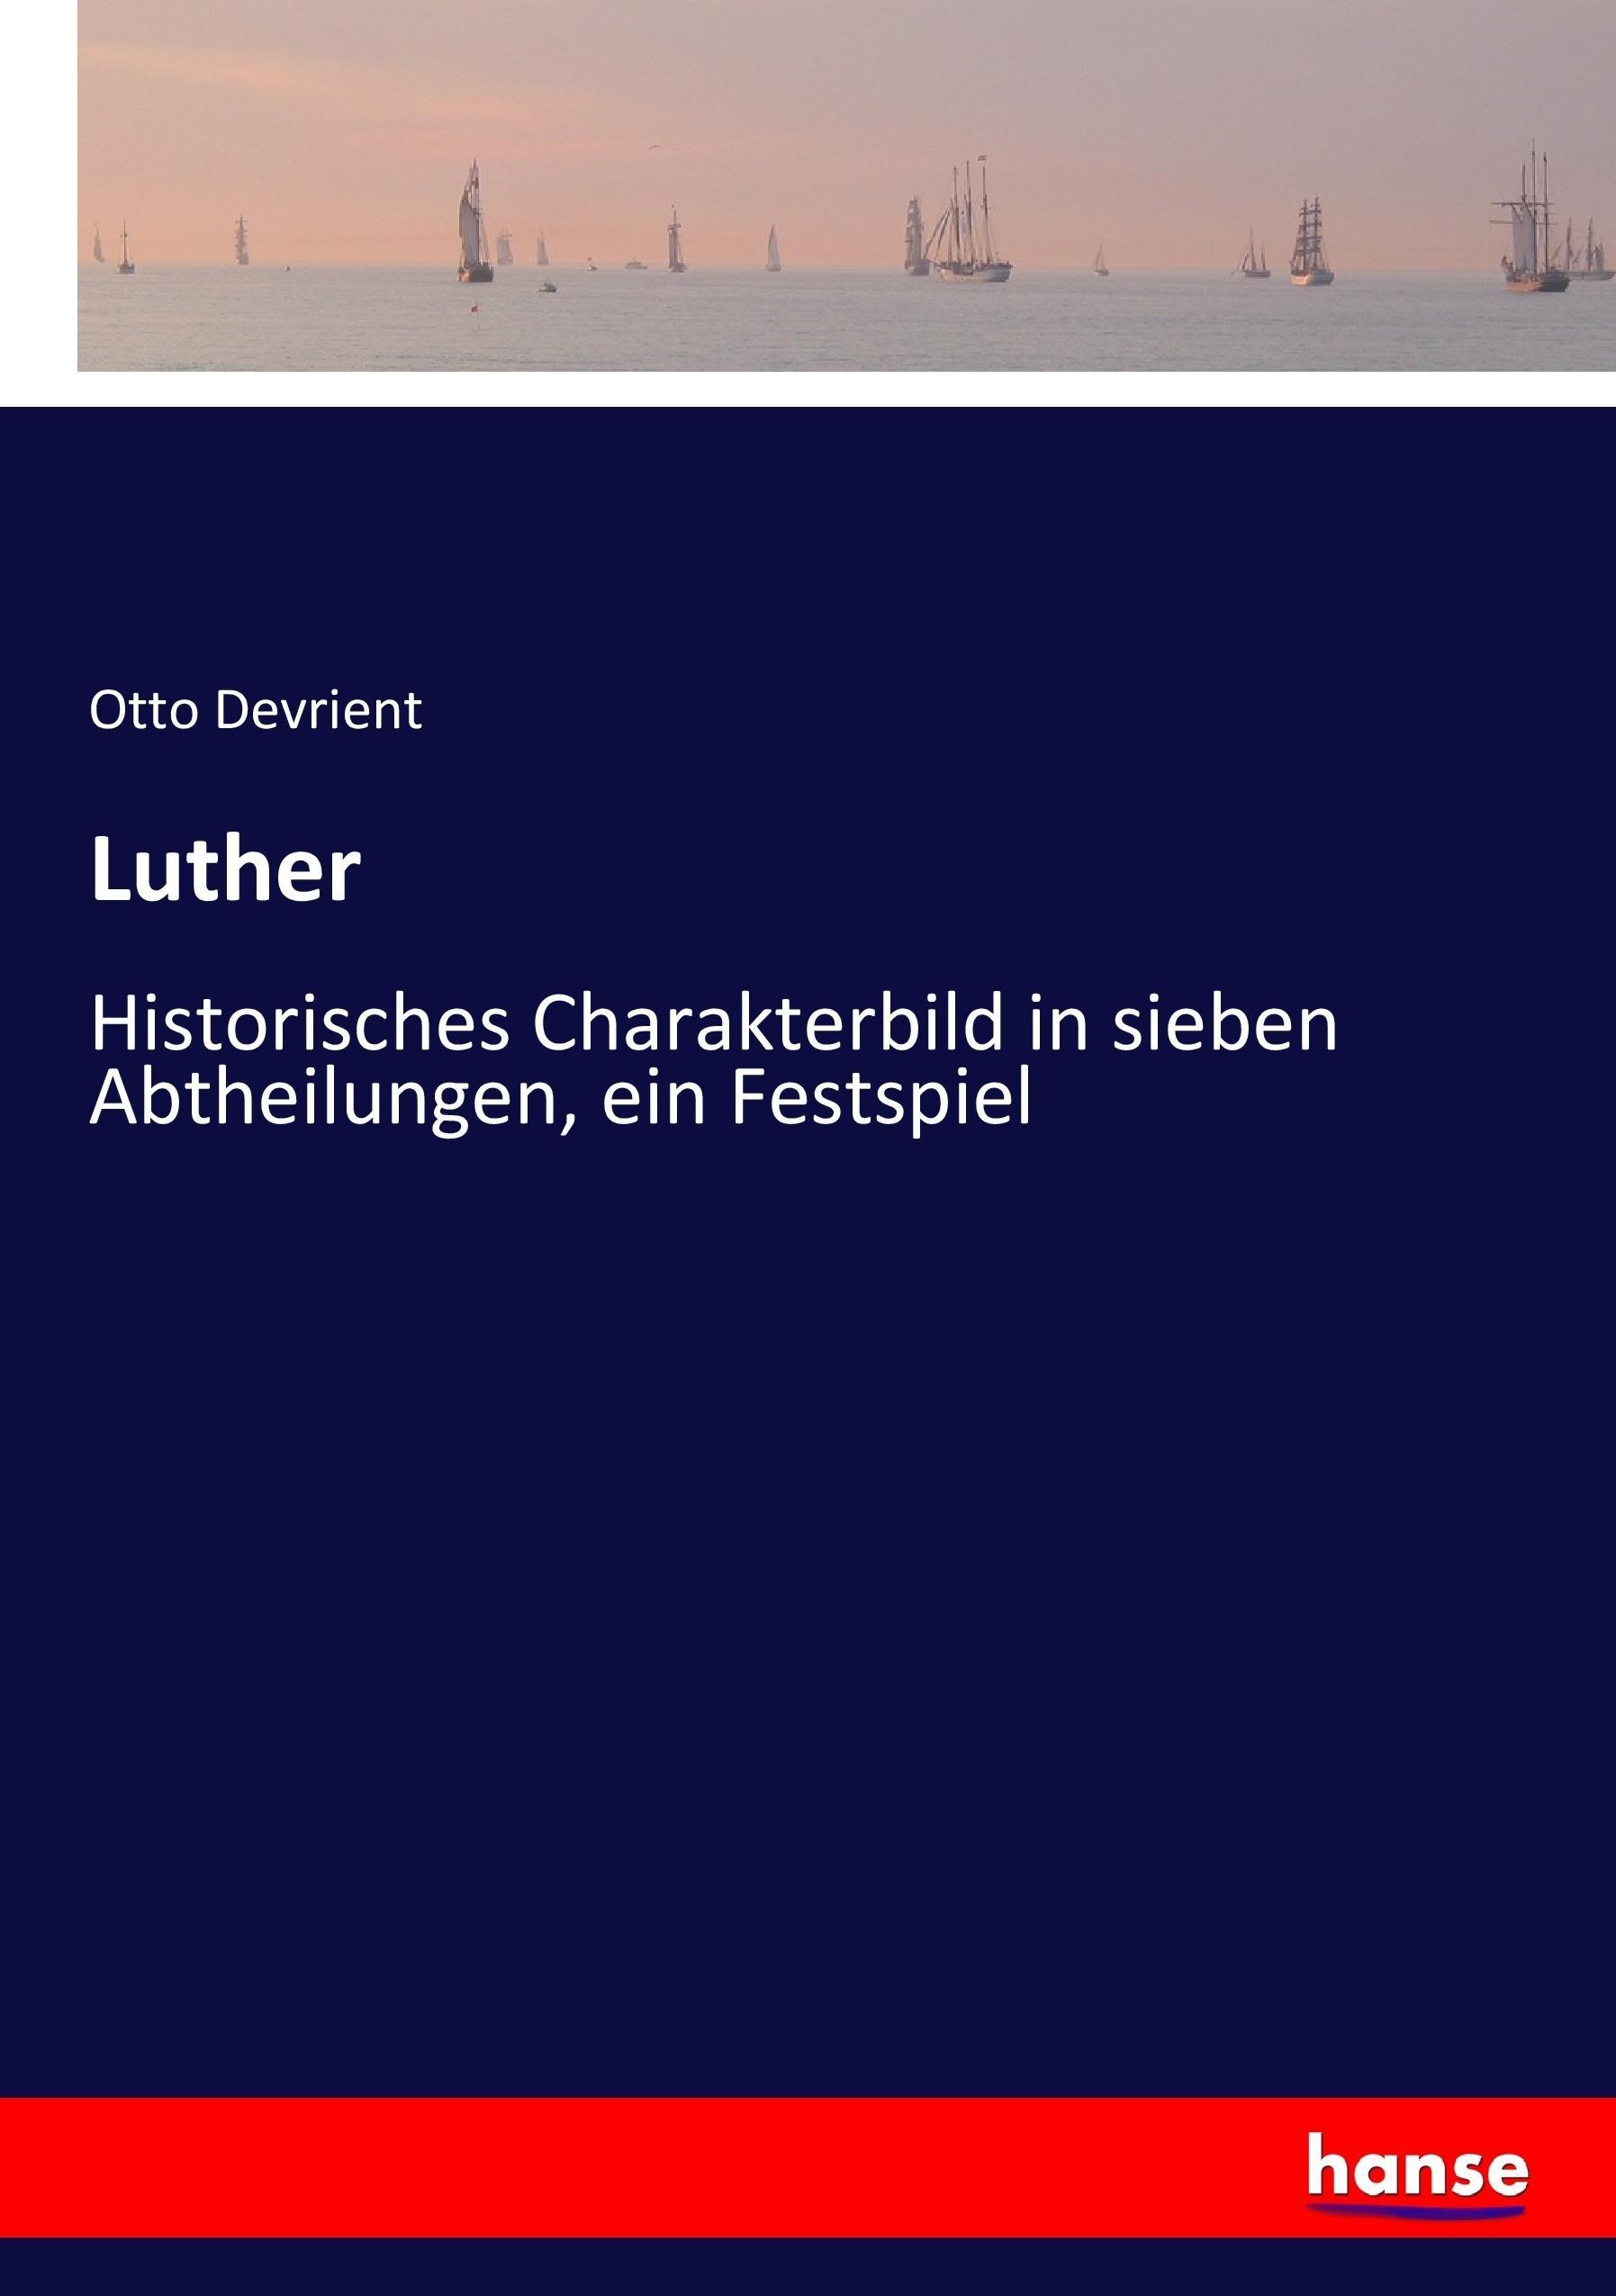 Luther | Historisches Charakterbild in sieben Abtheilungen, ein Festspiel | Otto Devrient | Taschenbuch | Paperback | 176 S. | Deutsch | 2017 | hansebooks | EAN 9783744626675 - Devrient, Otto